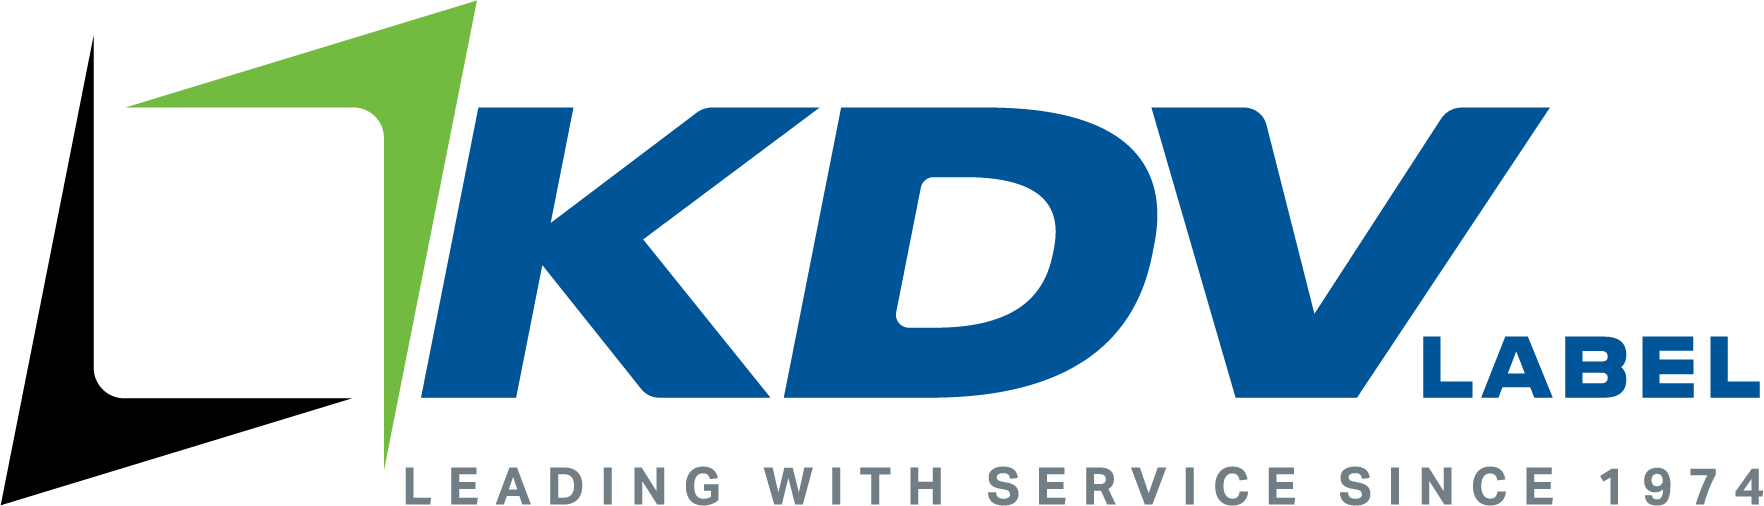 KDV Label Logo with Tagline